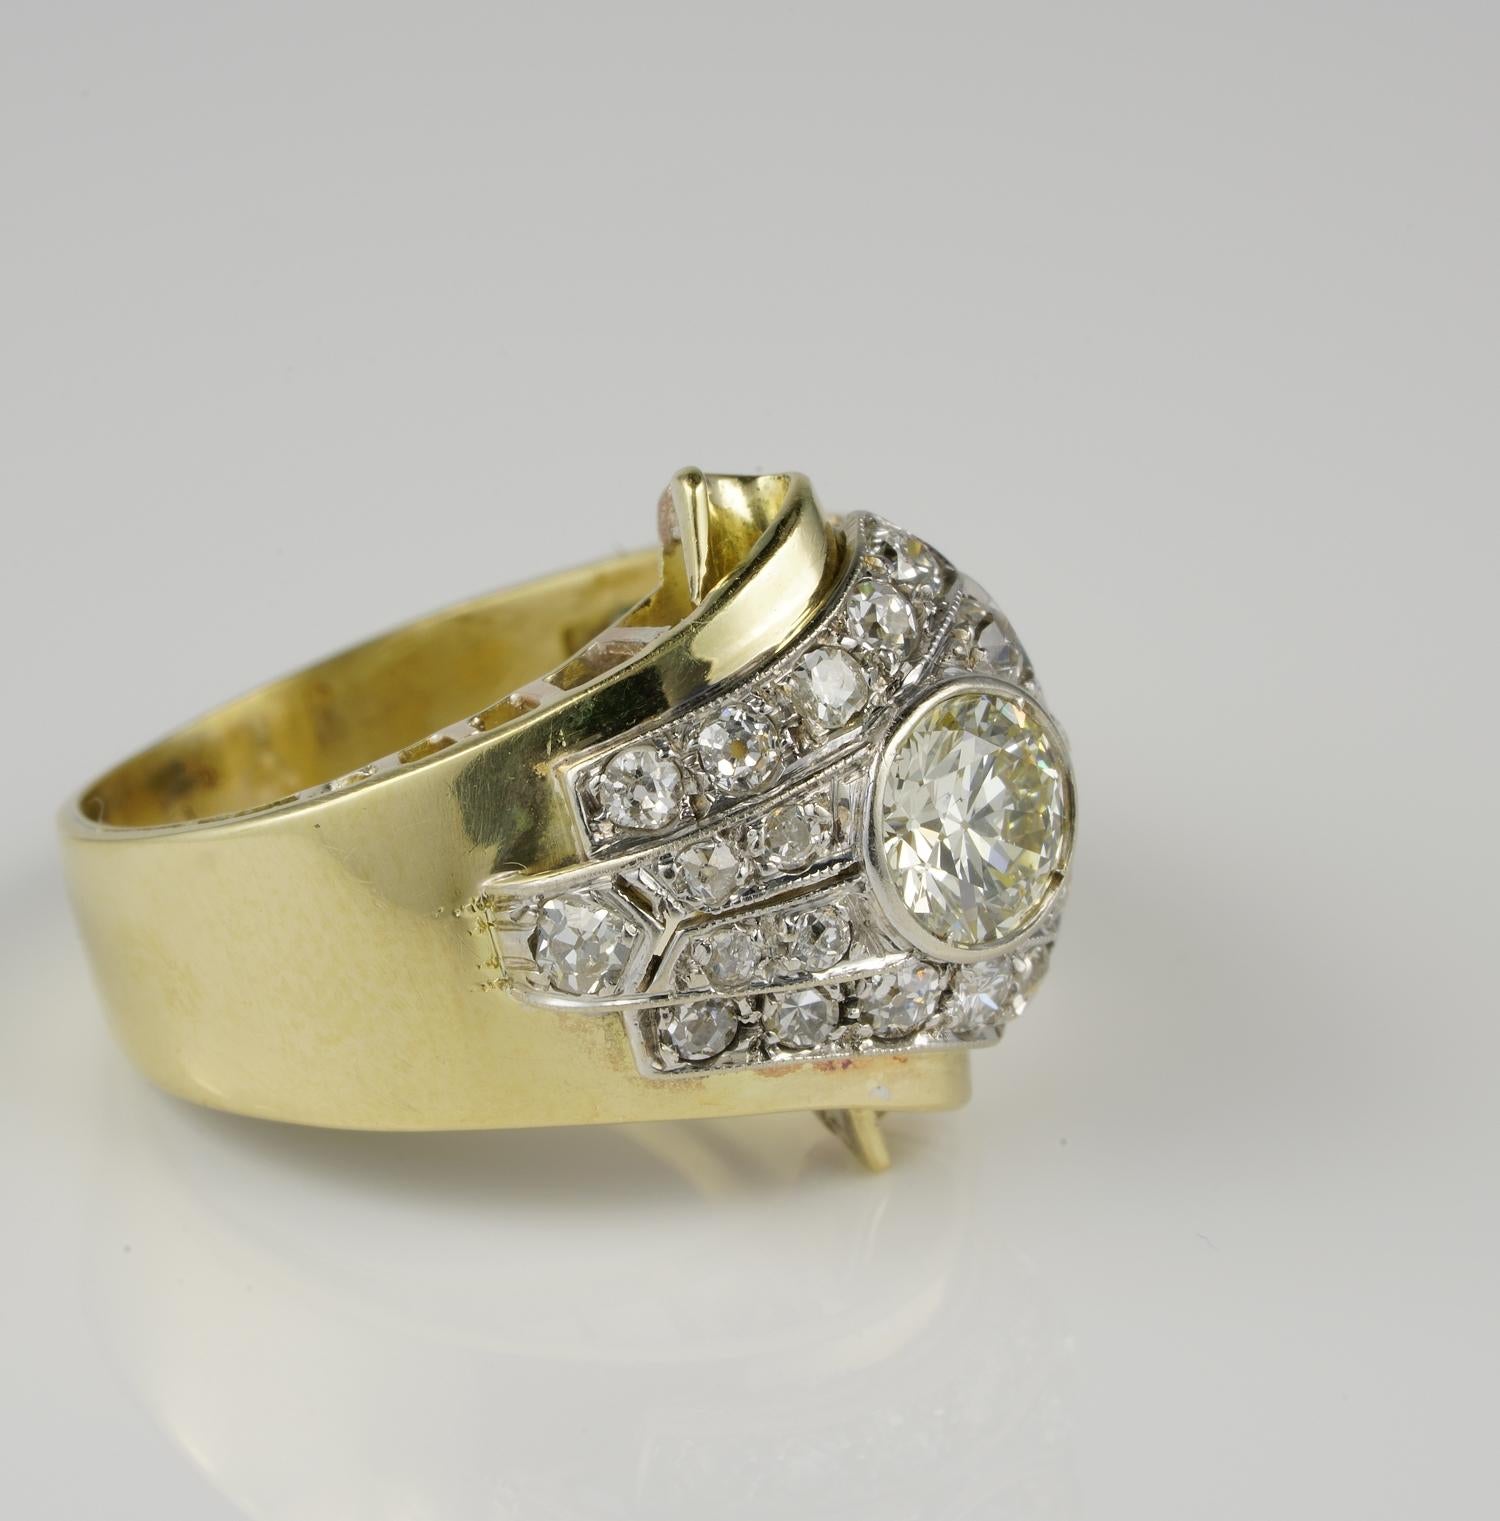 Dieser beeindruckende Ring aus der Zeit des späten Art déco stammt aus dem Jahr 1935.
Handmodelliert aus massivem 18 Kt Gold und Platin
Wunderschön gestaltet als unverwechselbare Schnalle, die die zeitlose Eleganz dieser Epoche voll zum Ausdruck